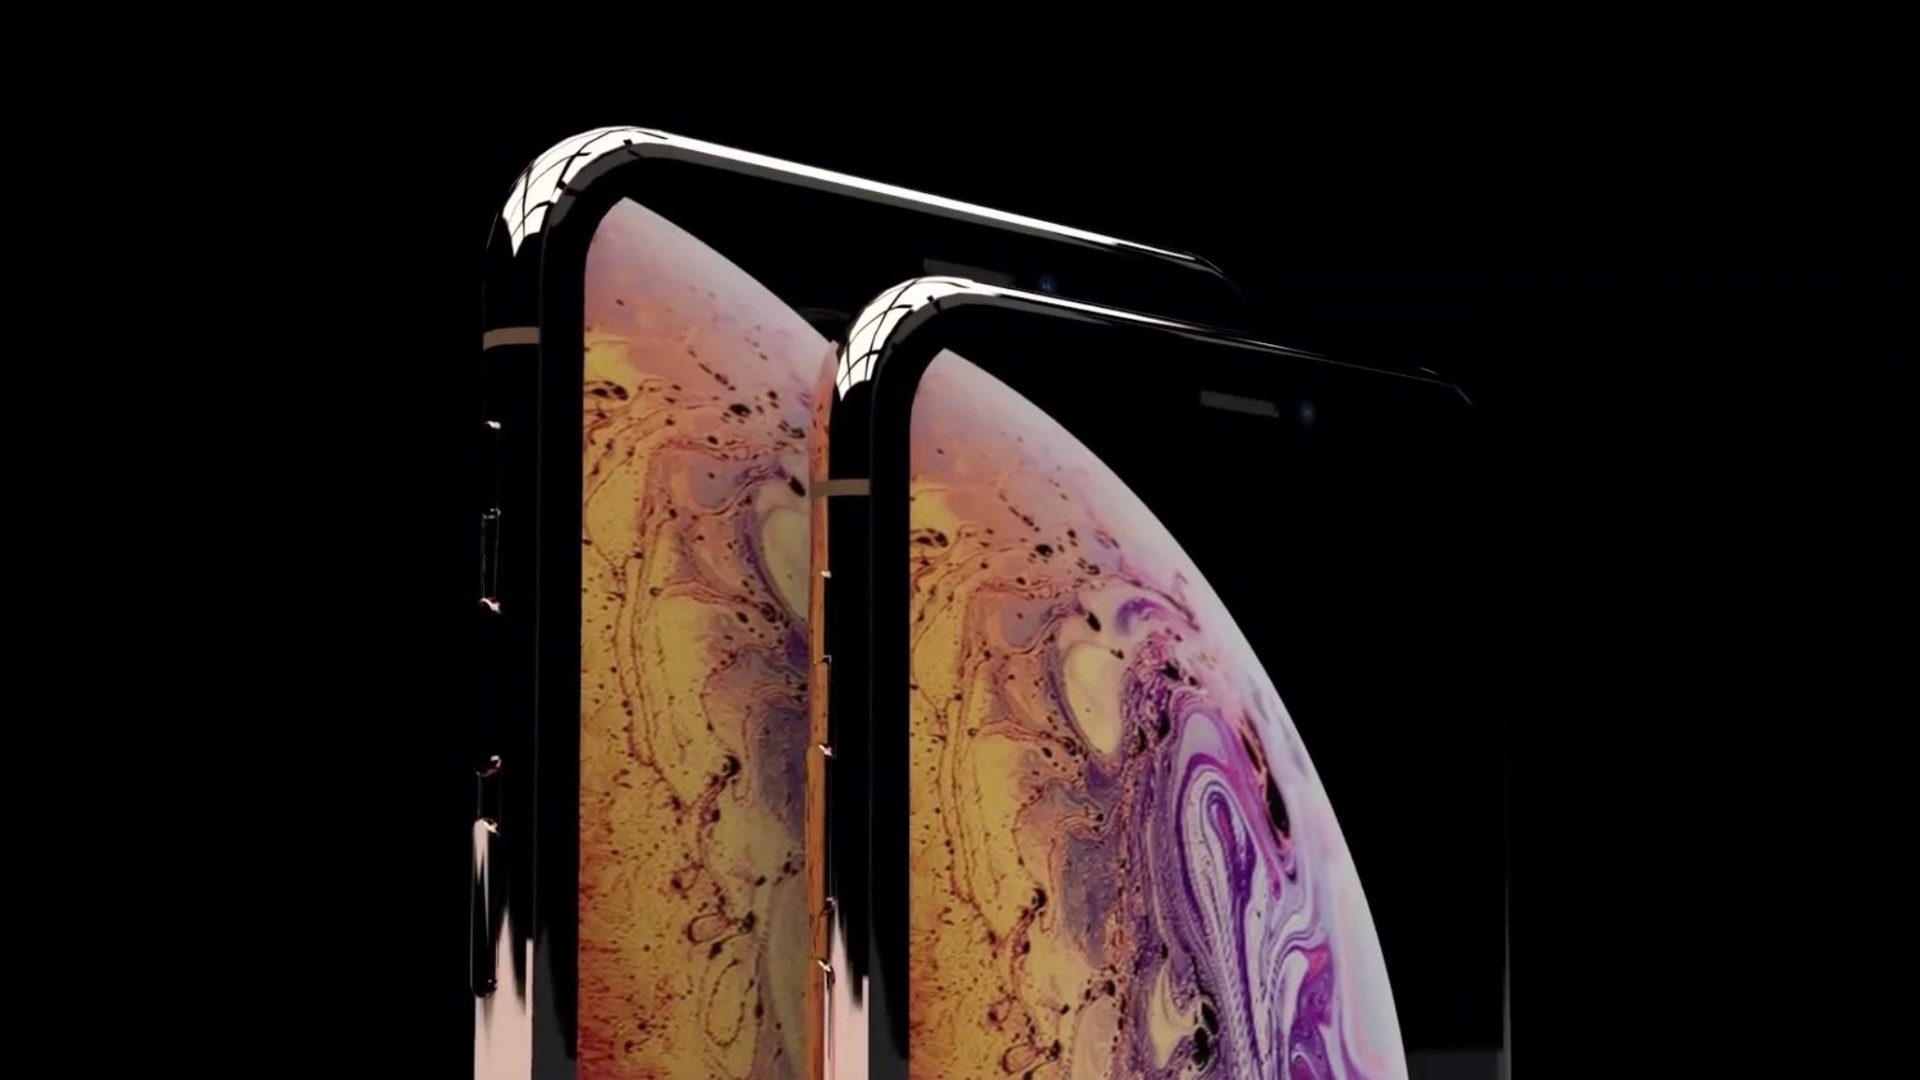 แหล่งข่าวชี้! “iPhone Xs Max” จะเป็นรุ่นพรีเมียมในปี 2018 นี้ : พร้อมจอ OLED ขนาด 6.5 นิ้ว